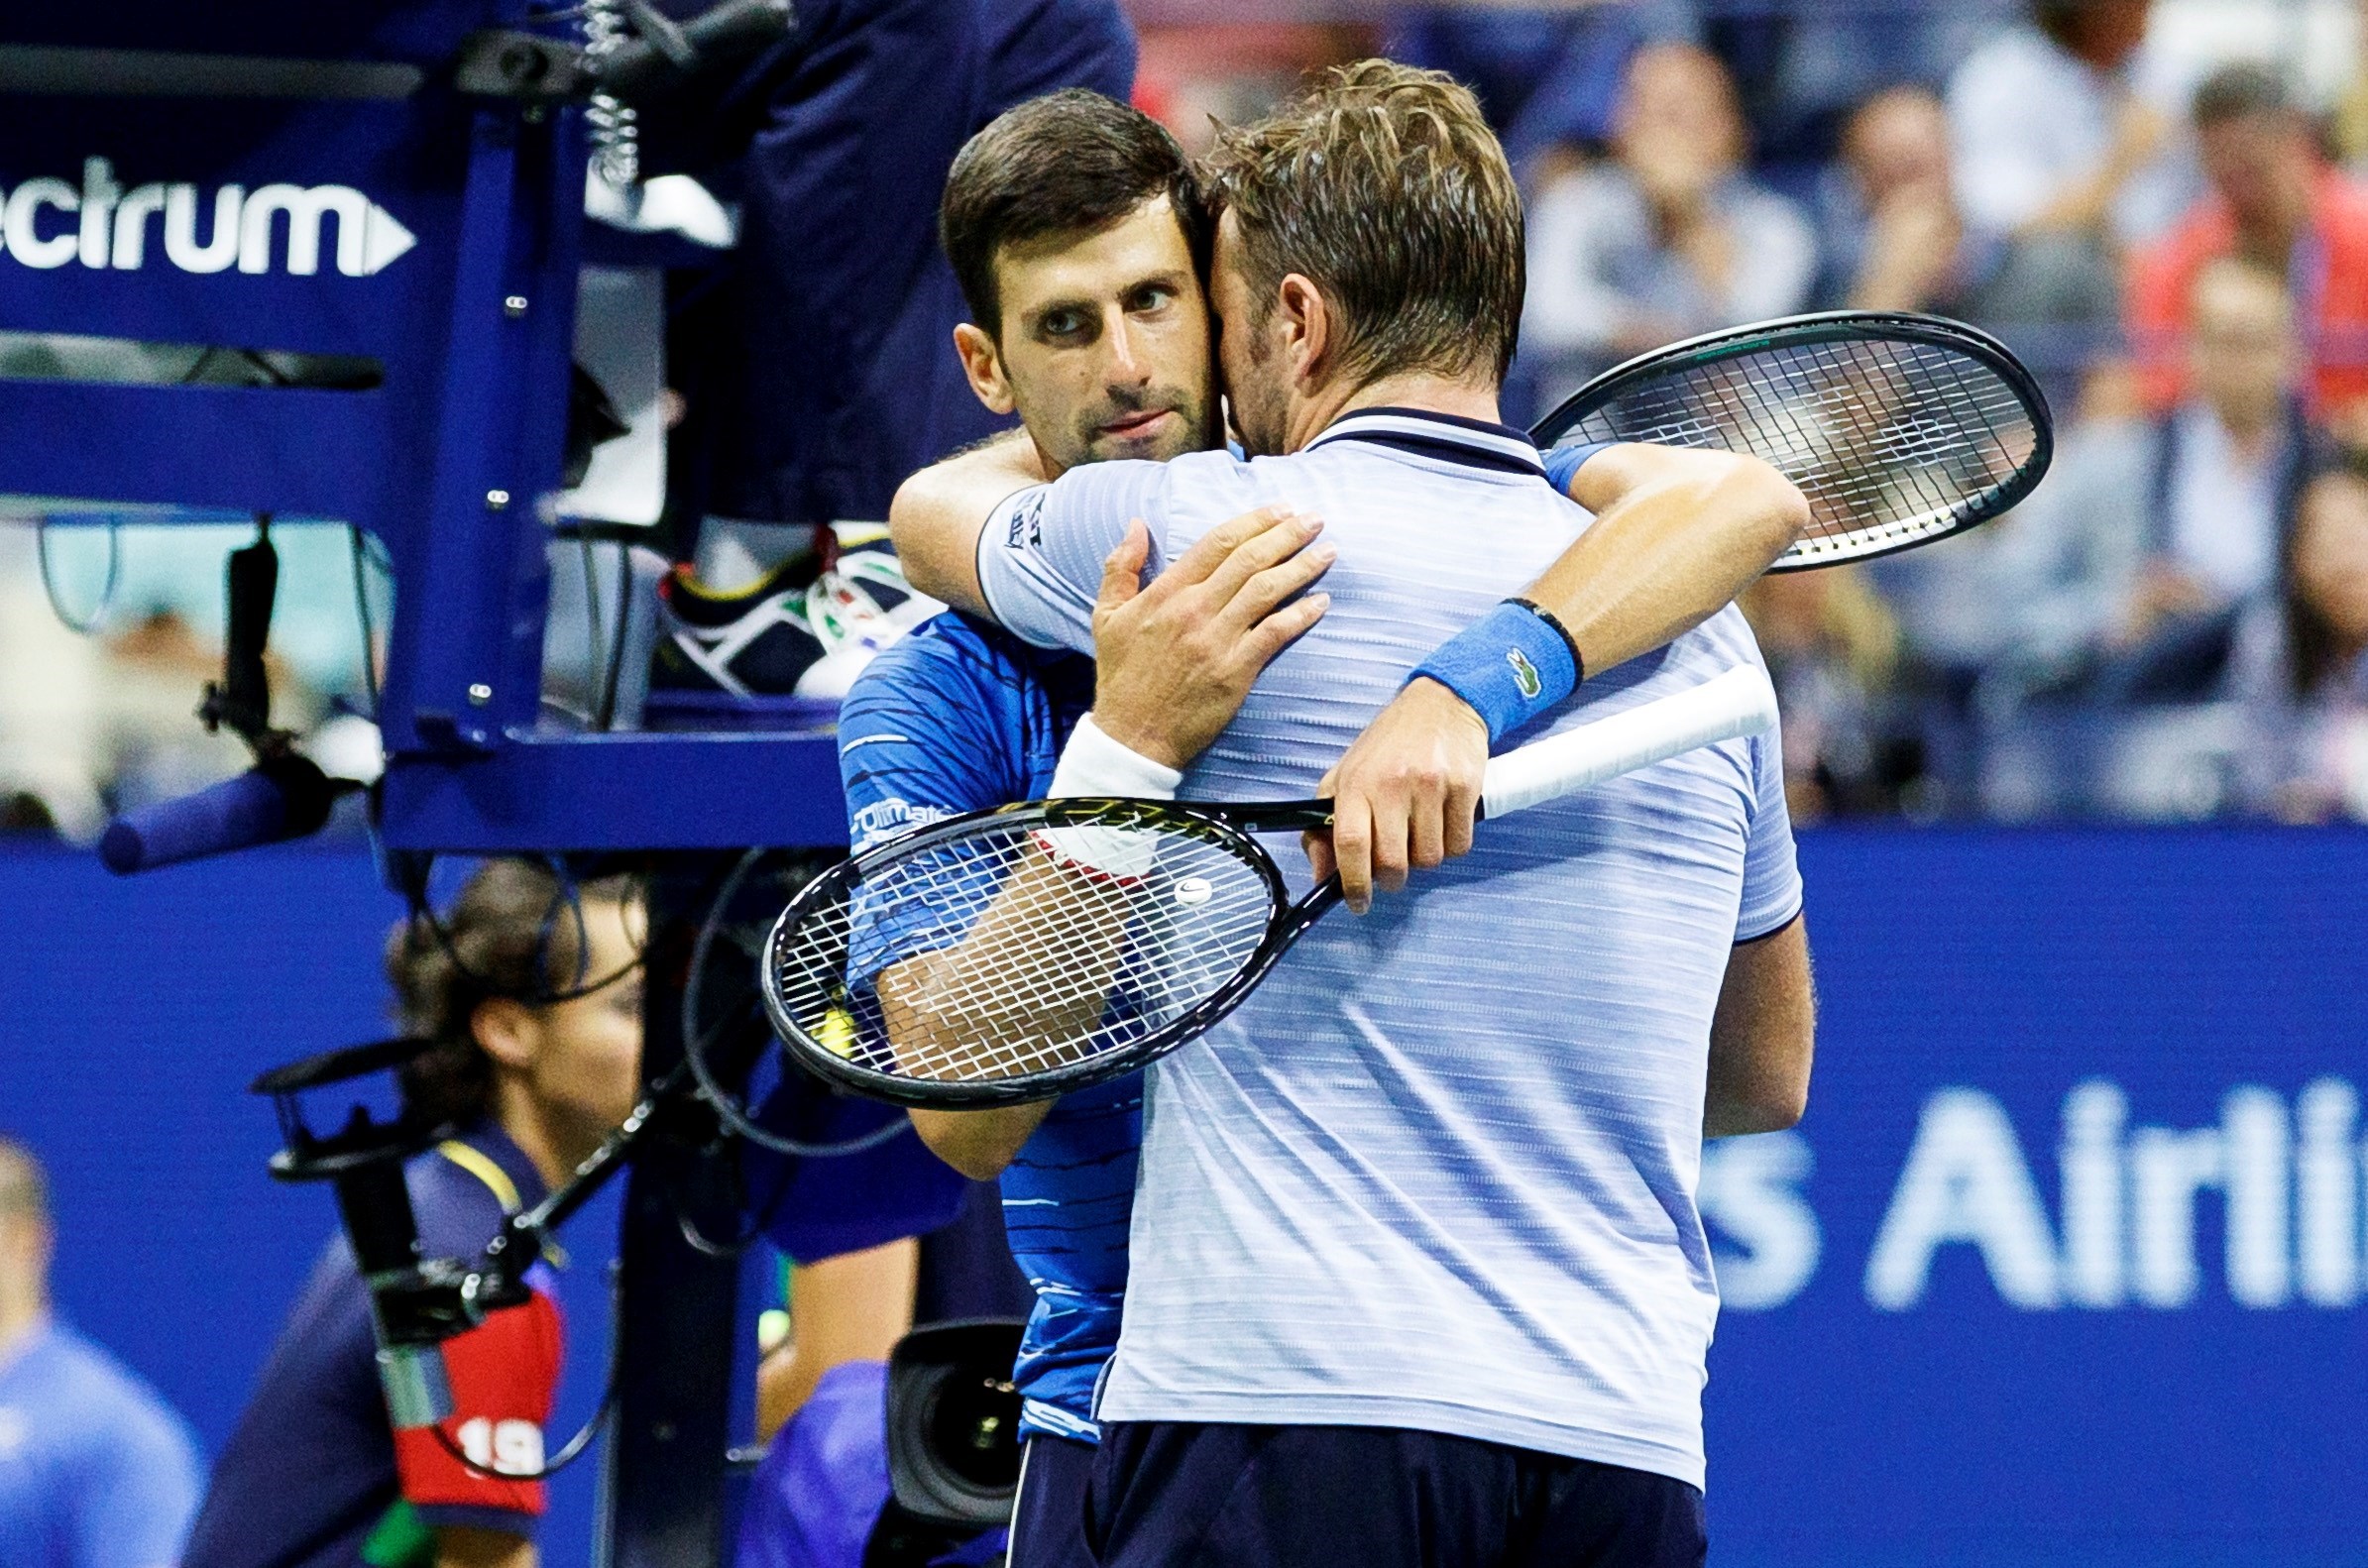 US Open : Djokovic se retira por lesión; gana Federer avanza a 4tos. (Fotos)